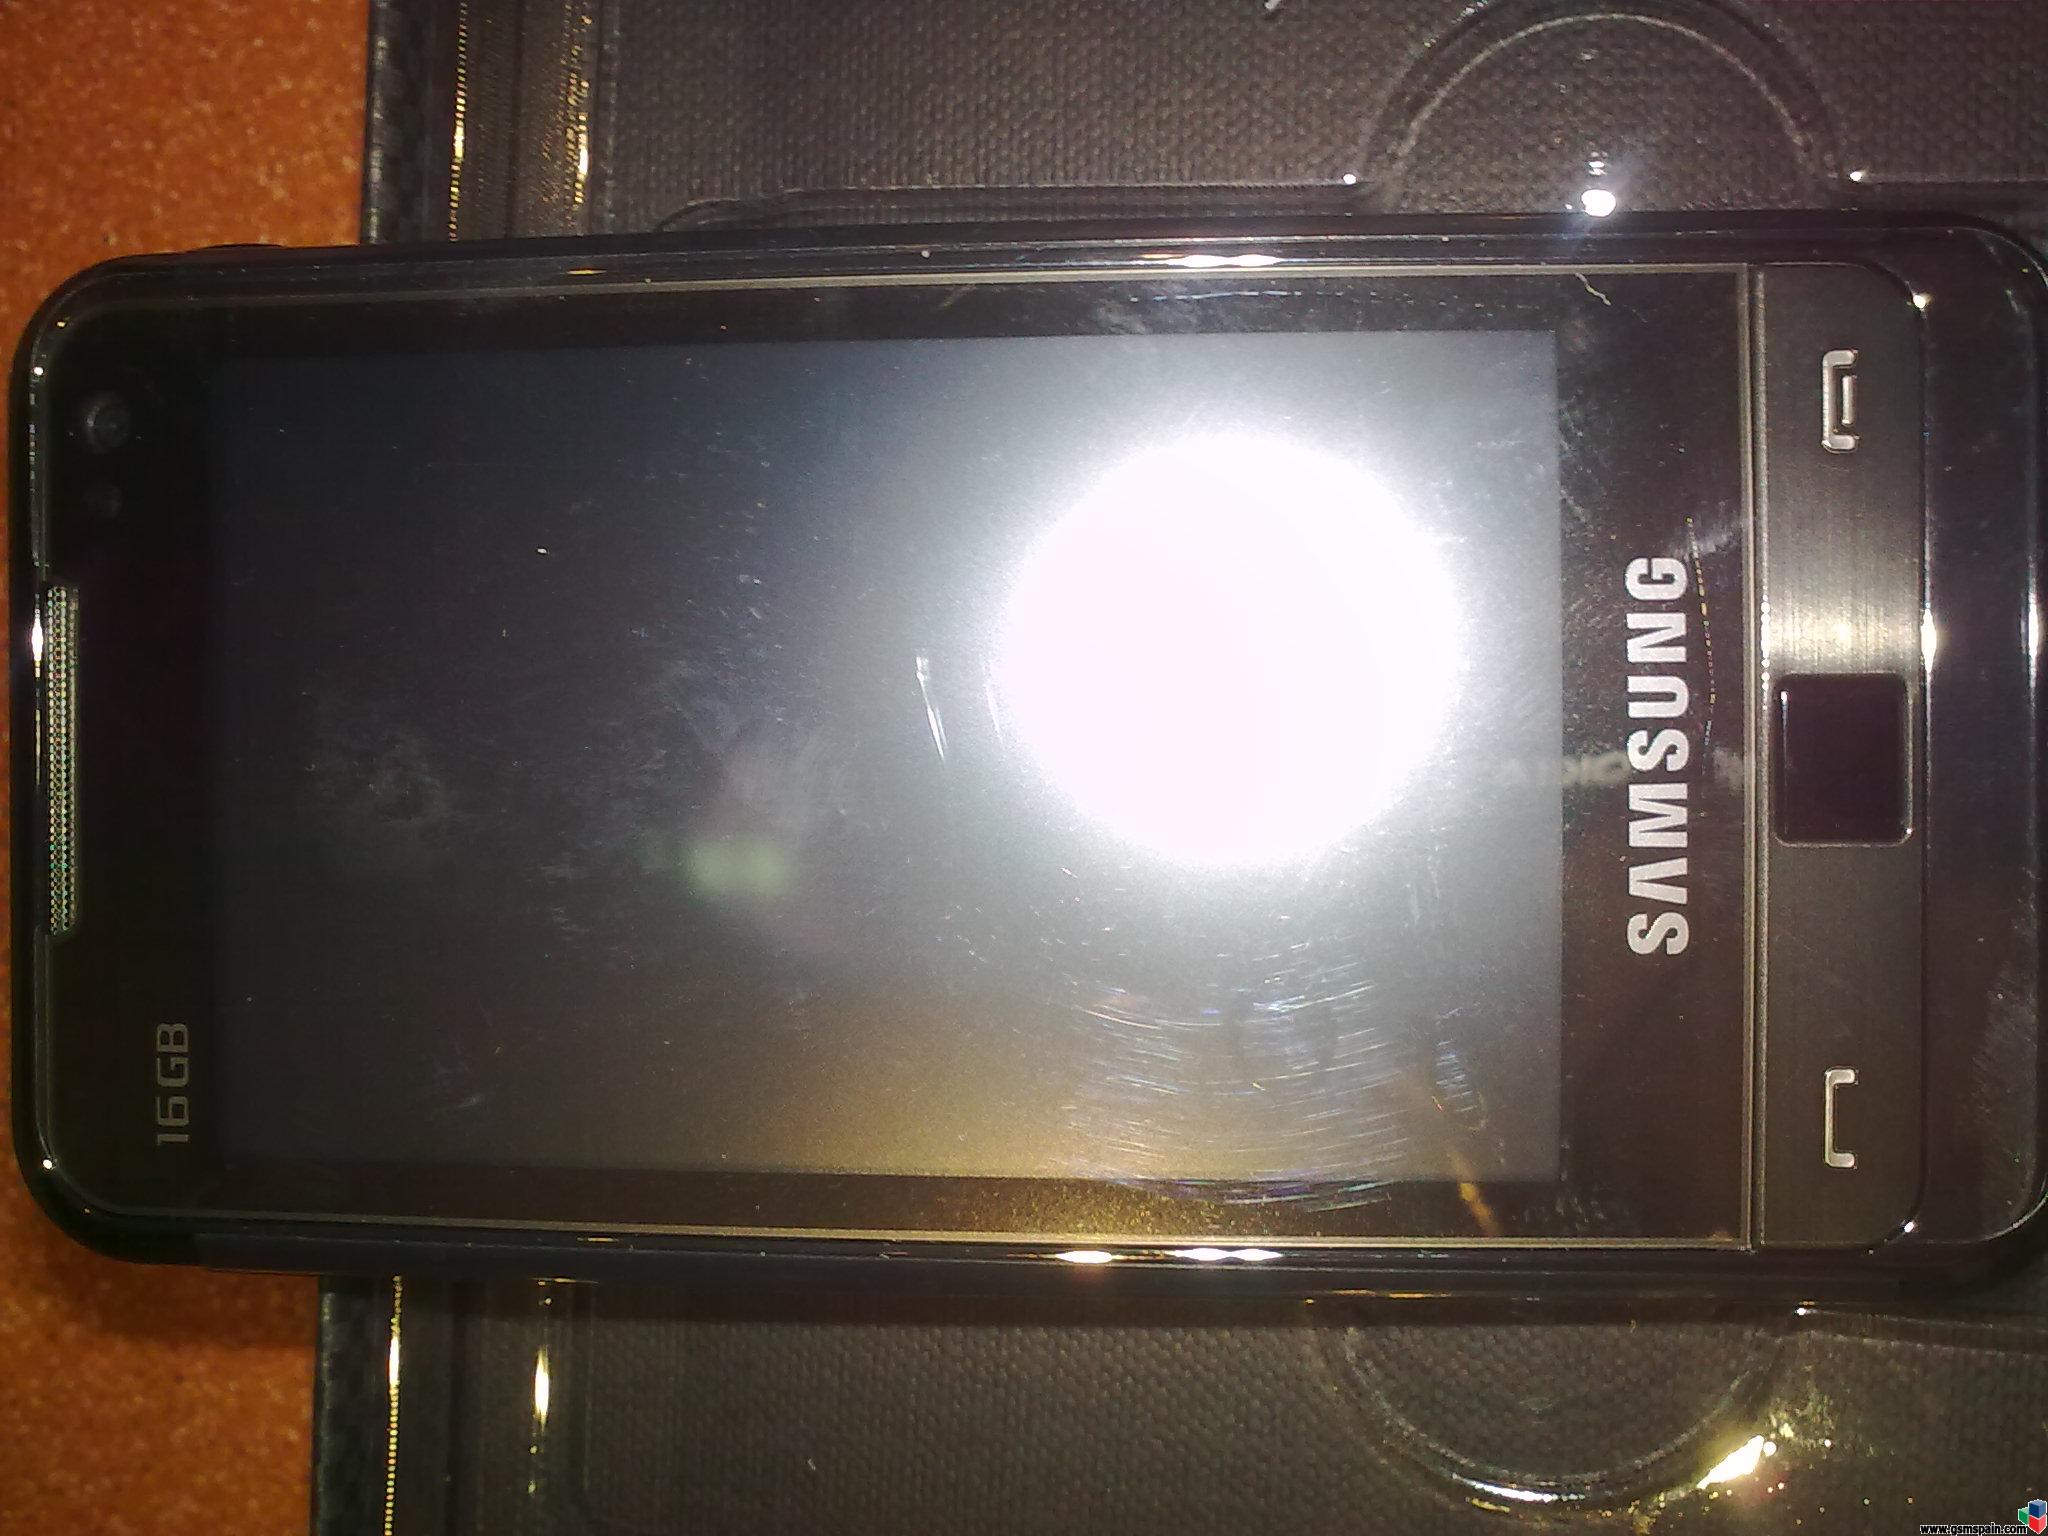 Vendo 320 Euros Samsung Sgh- I900 Omnia 16gb Nuevo Libre Origen Sin Estrenar